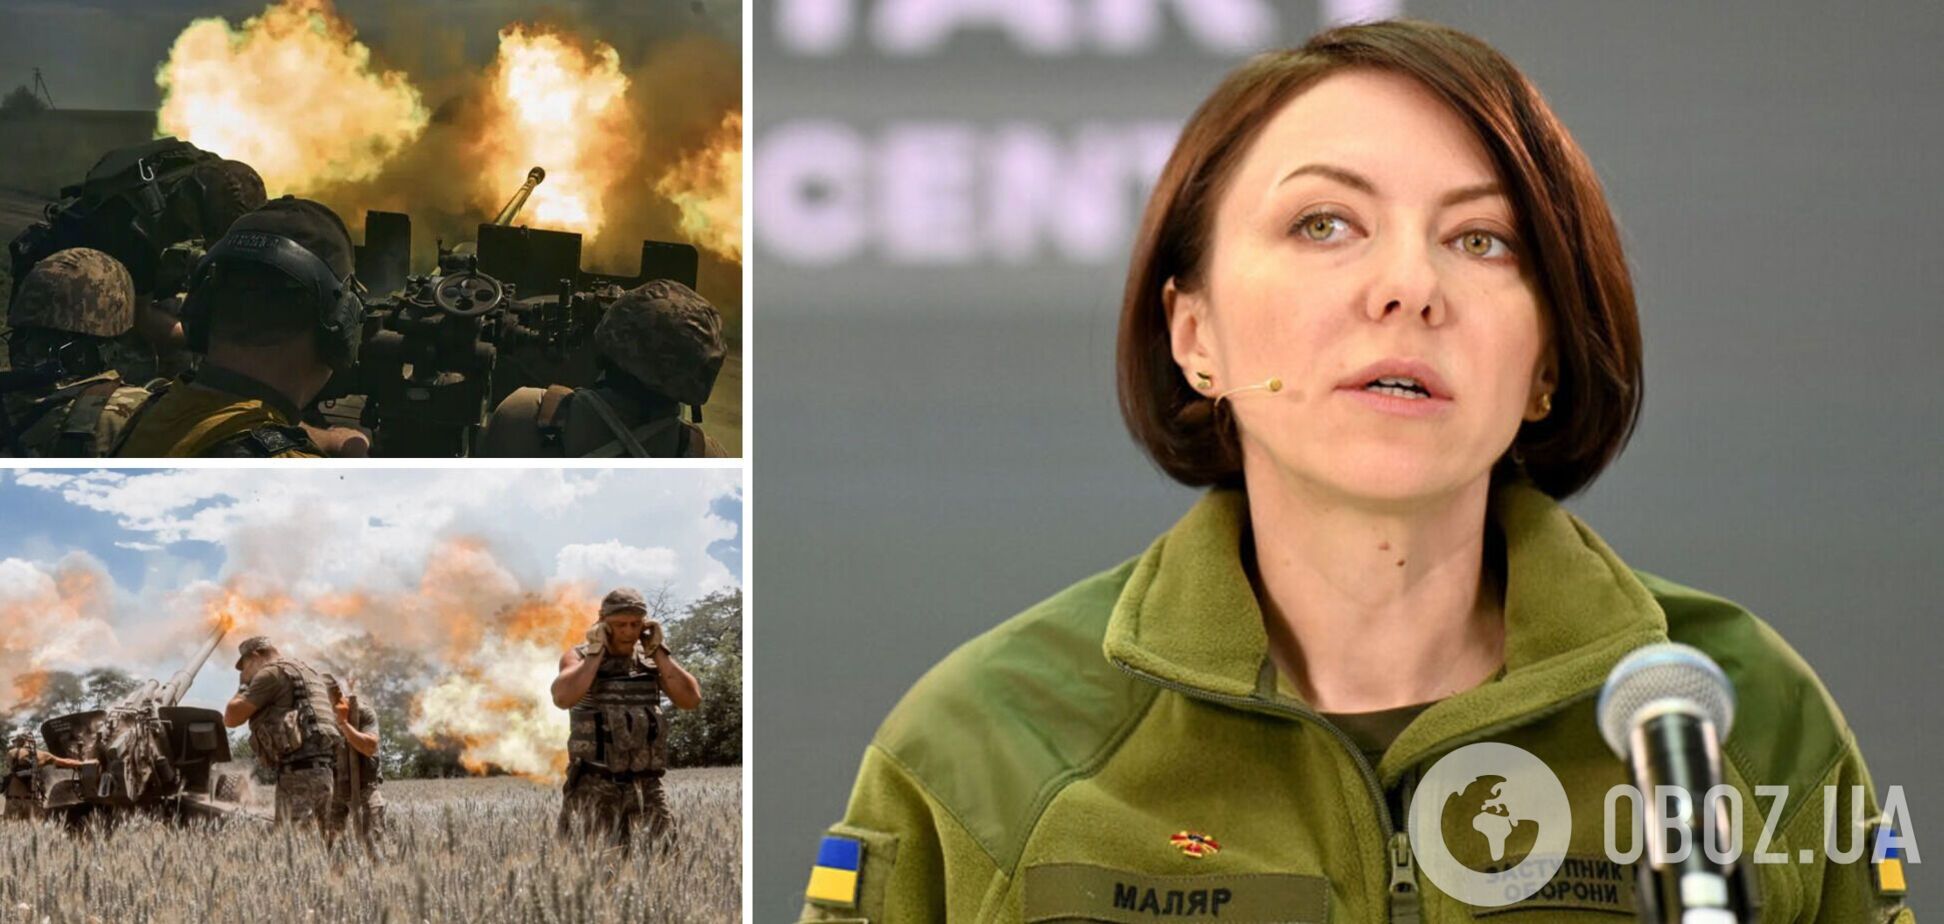 'Пытаются остановить наше наступление': Маляр заявила, что РФ подтягивает силы по всей линии фронта, и назвала цели врага